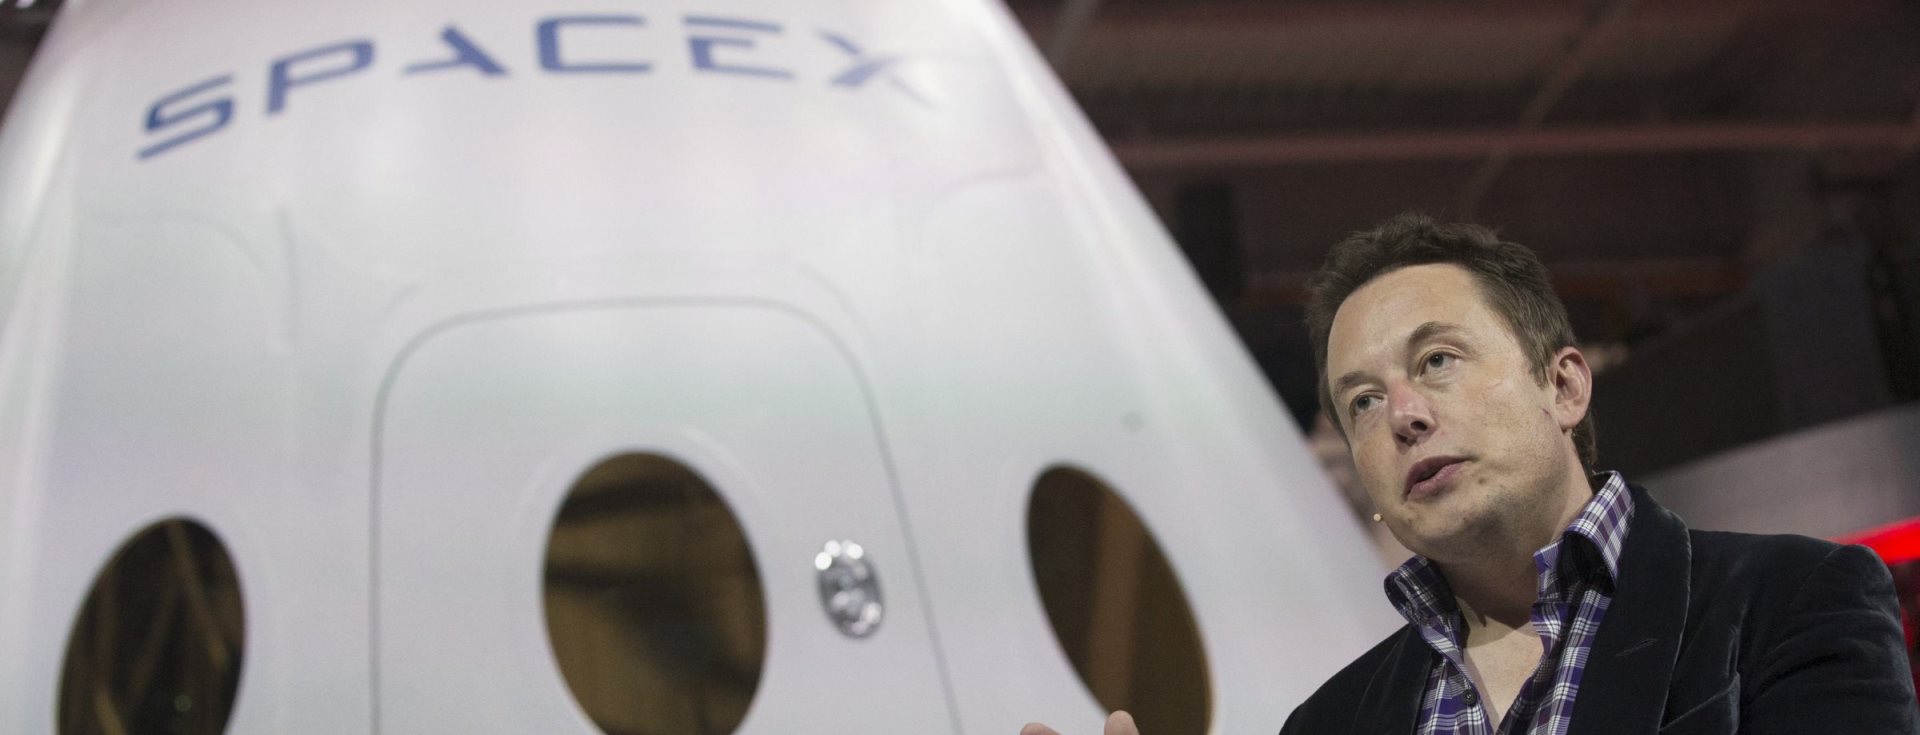 SpaceX'in İçinden: İnsanlığı Mars'a Taşıyacak Şirkette Çalışmak Nasıl?